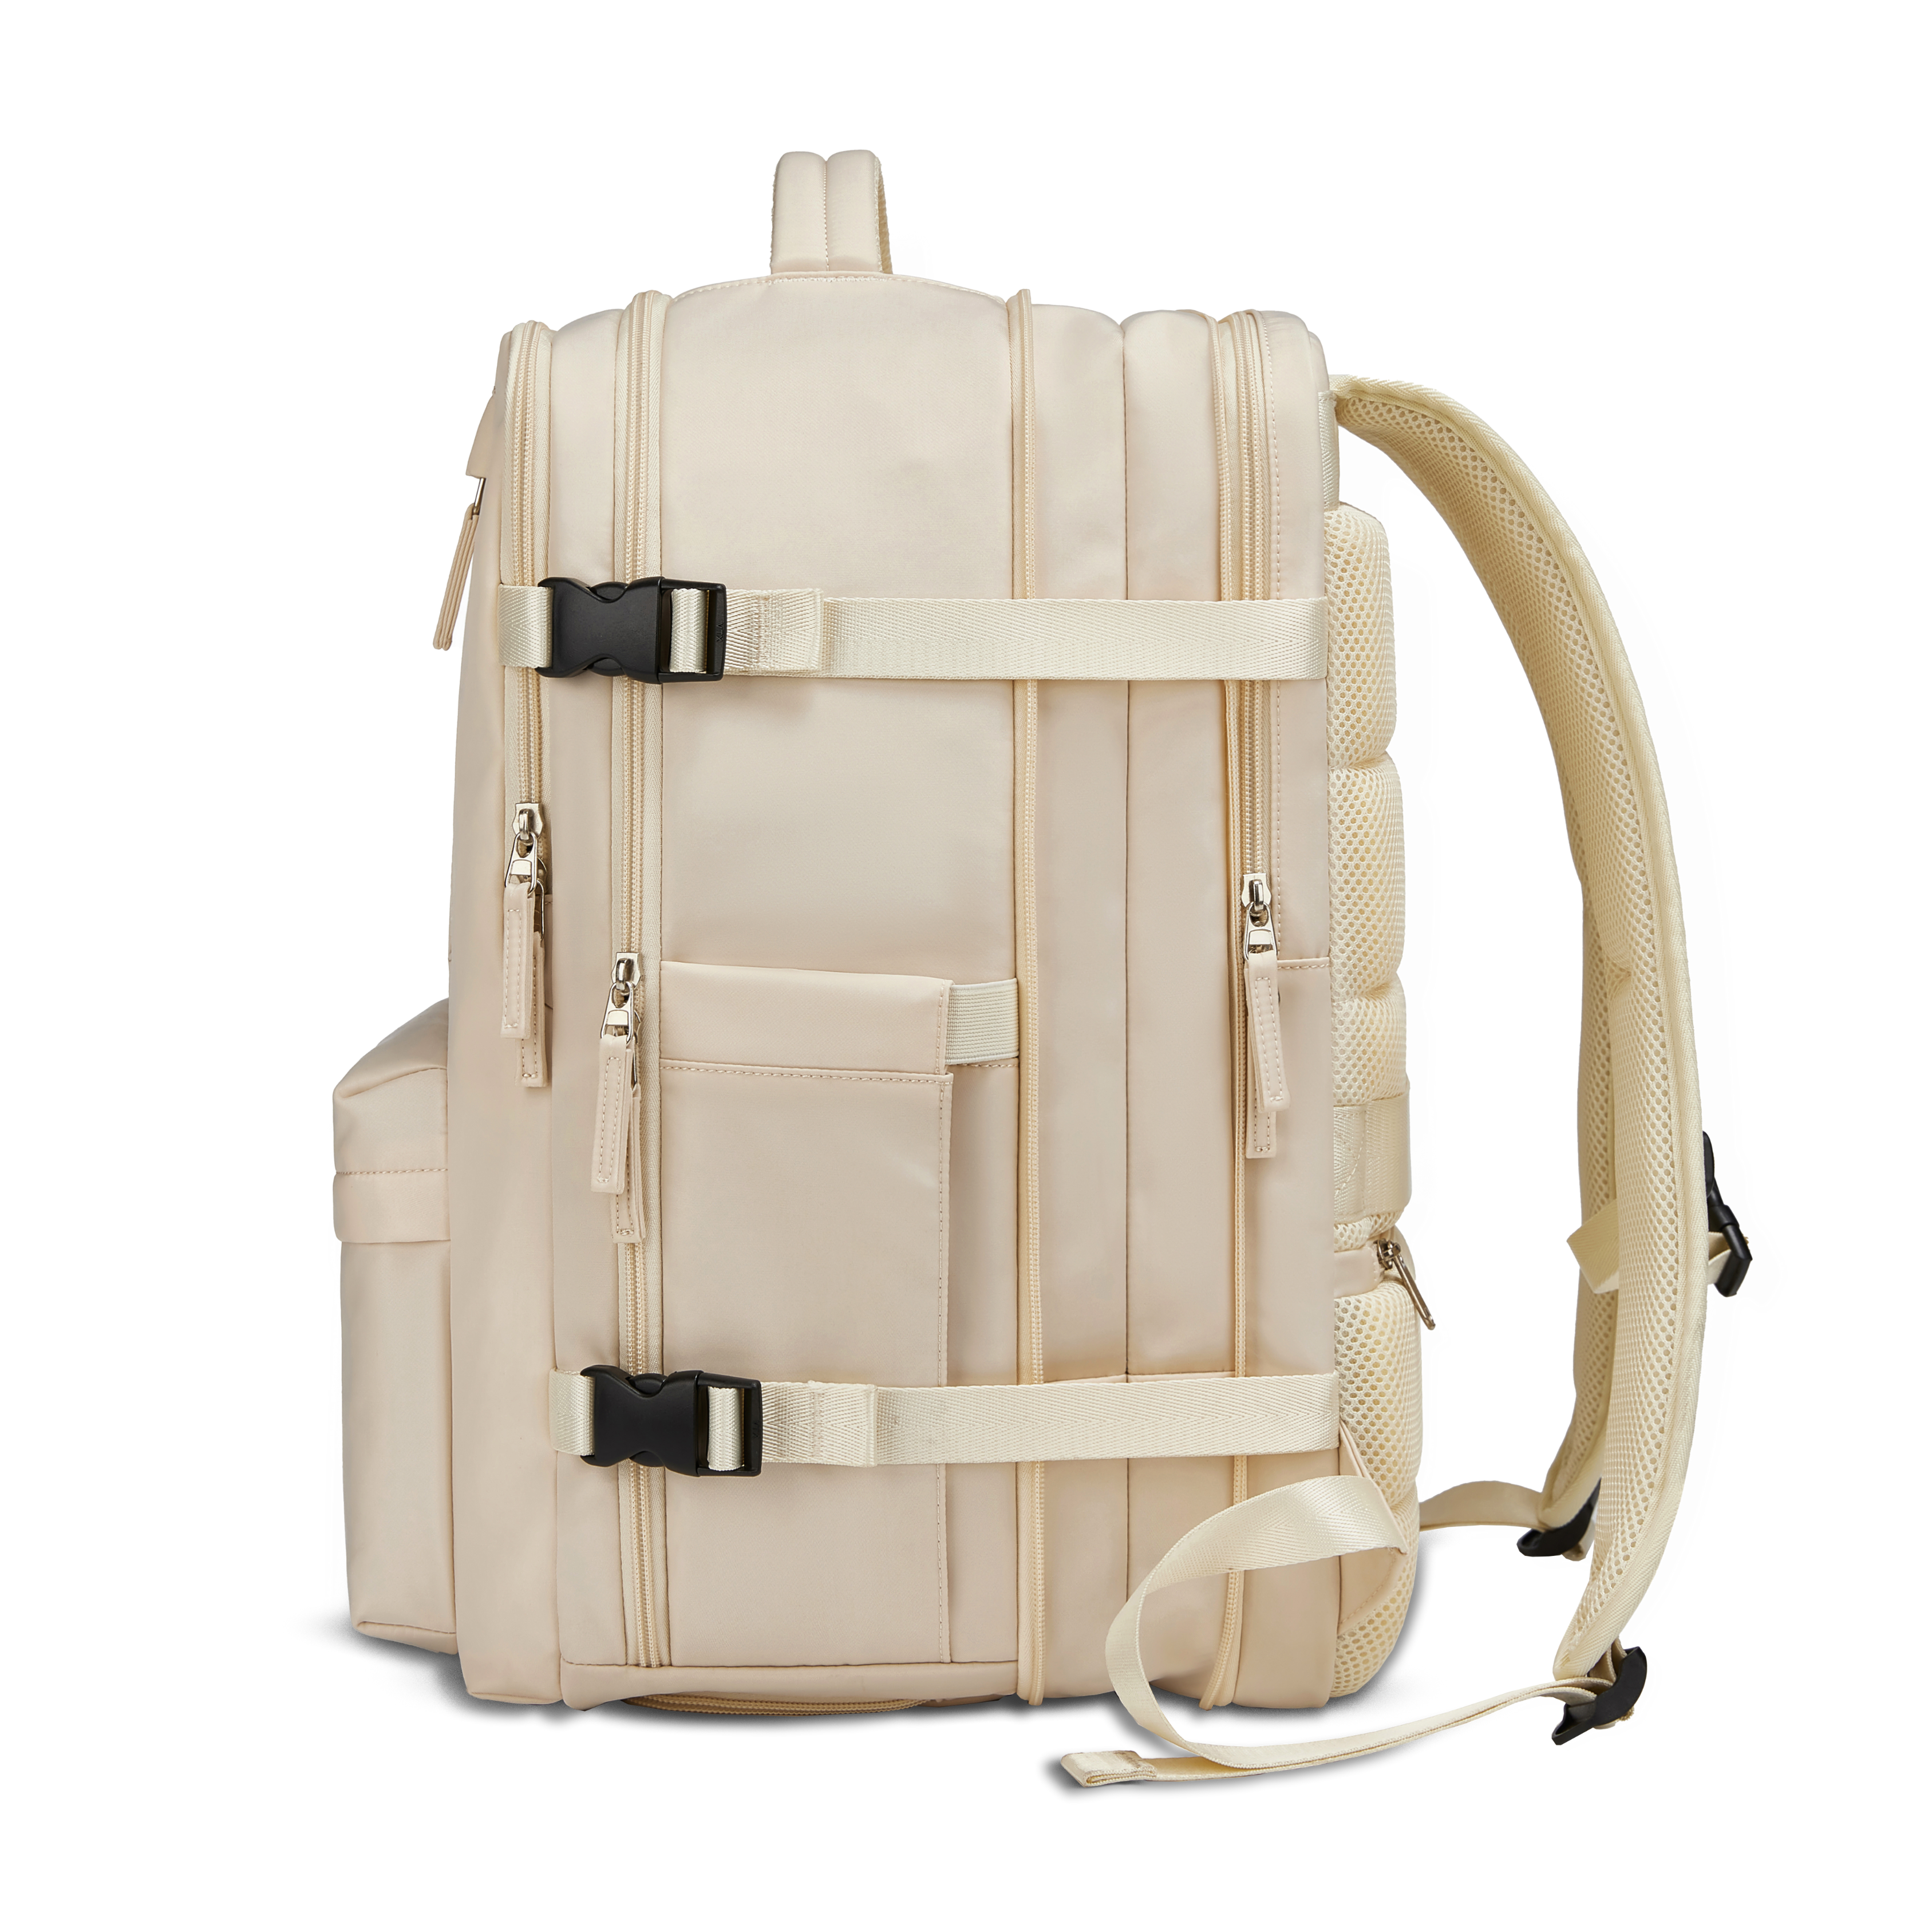 Mochila Xclusive Royal Backpack Blanca expandible expandida por el lado